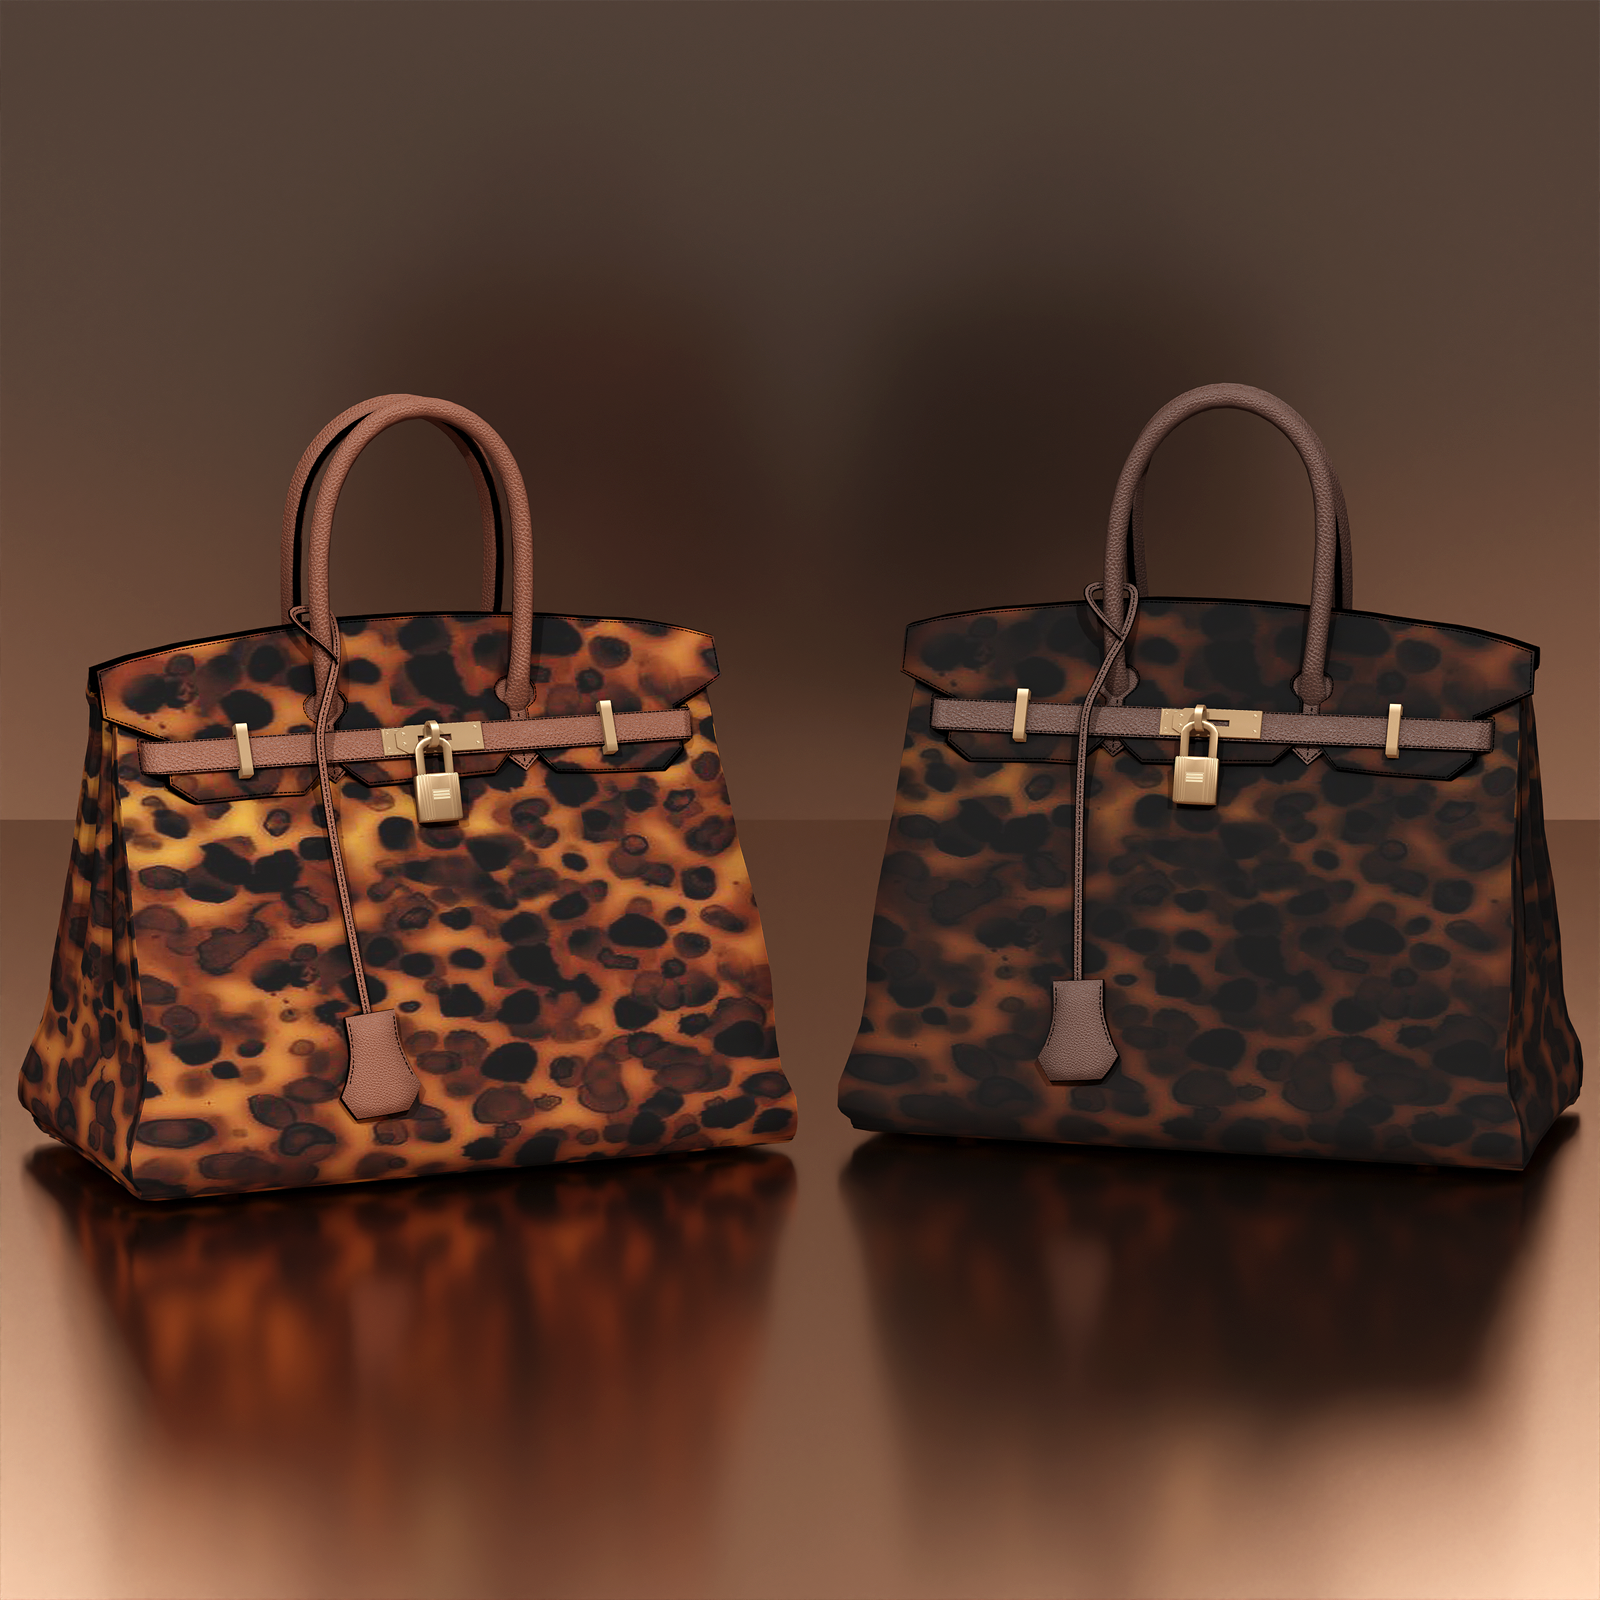 Sims 4 Louis Vuitton Bag Decor